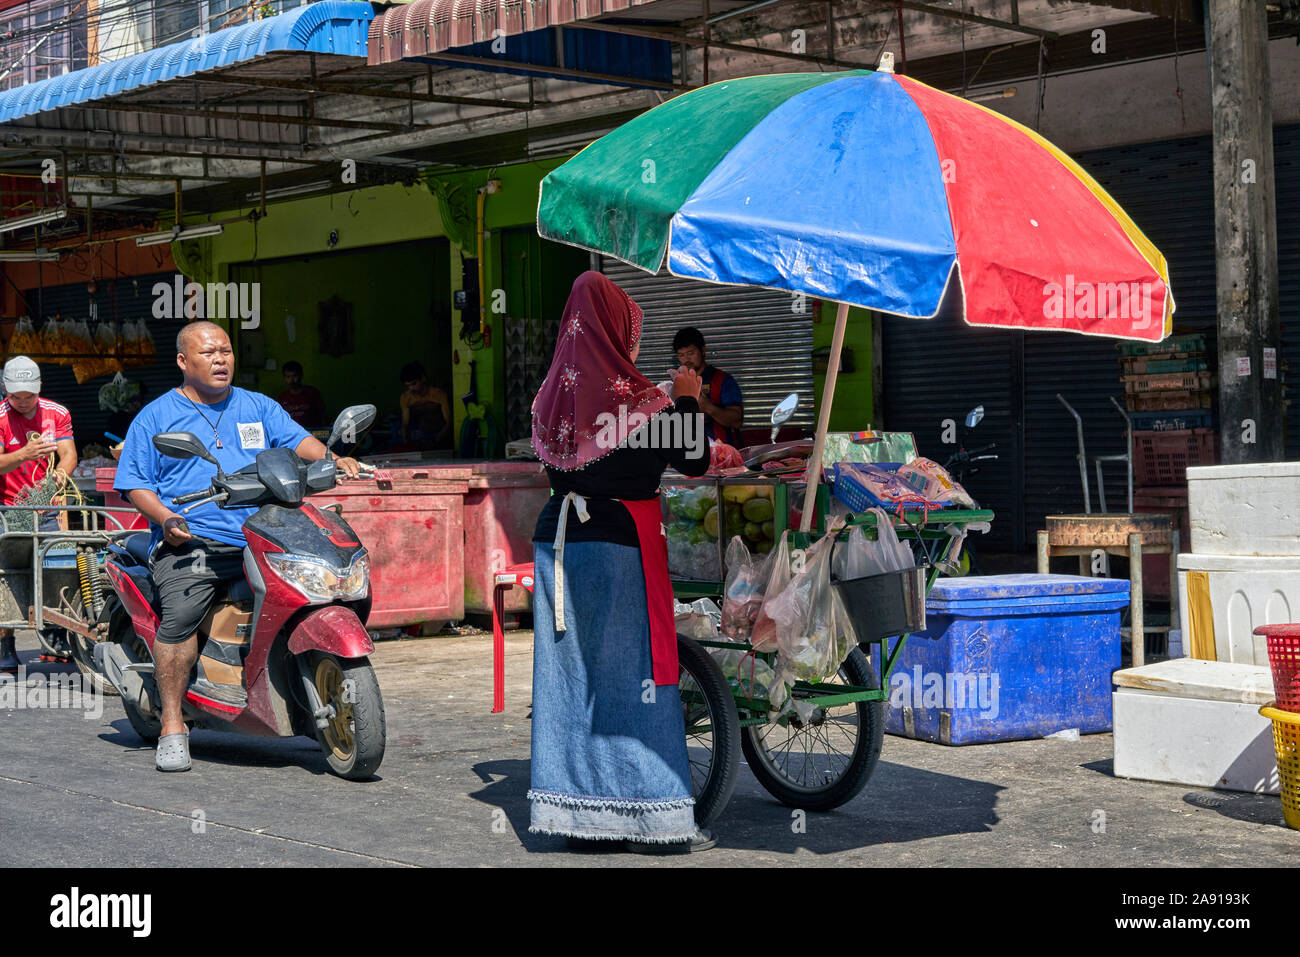 Vendita di cibo di strada in Thailandia. Donna musulmana che vende da cart di cibo, Asia sudorientale Foto Stock